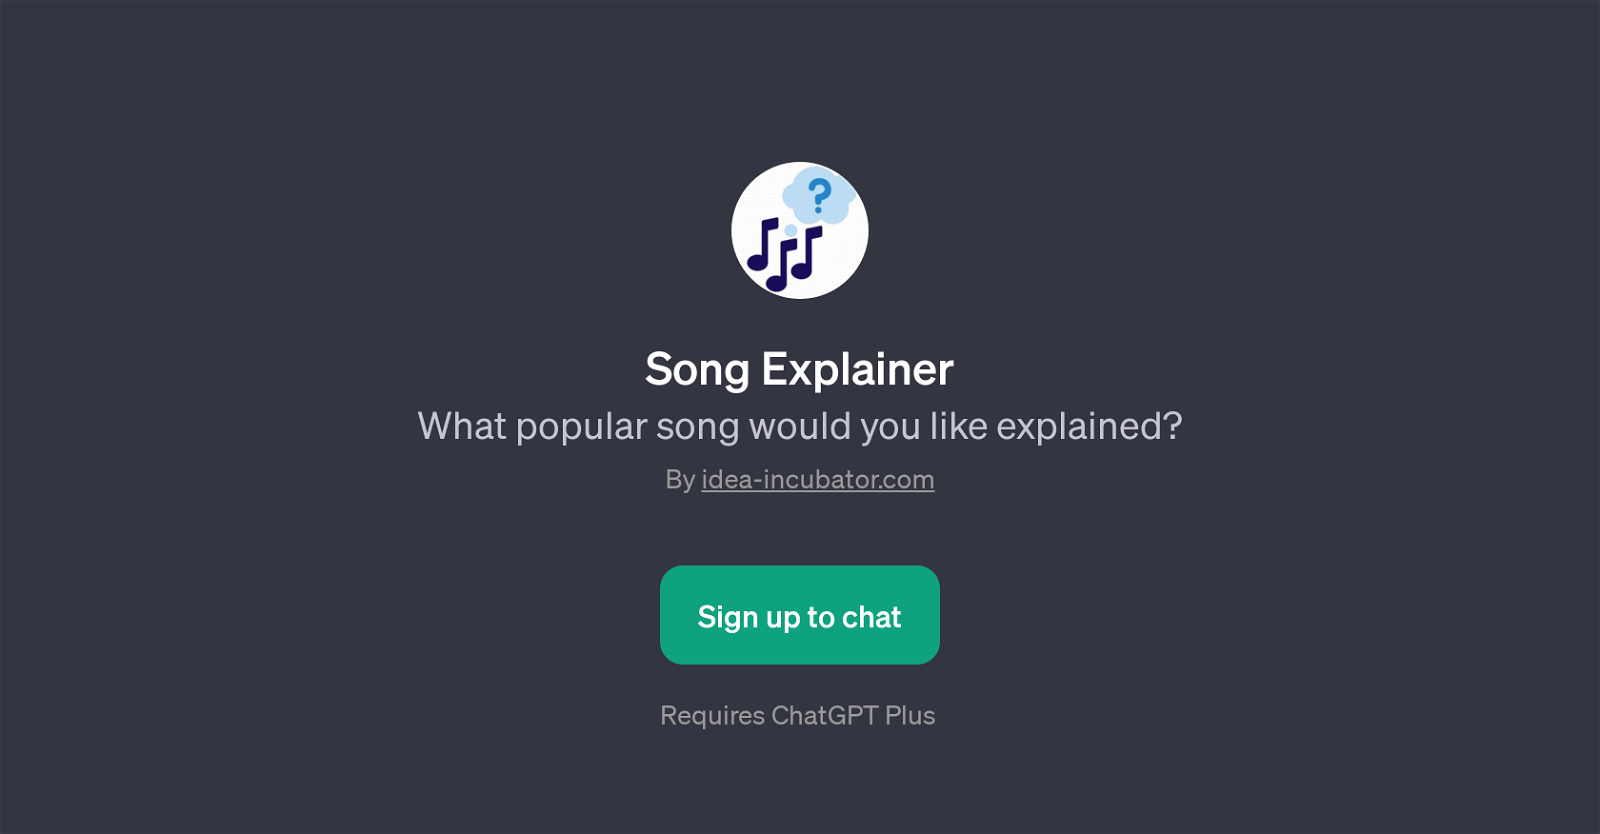 Song Explainer website